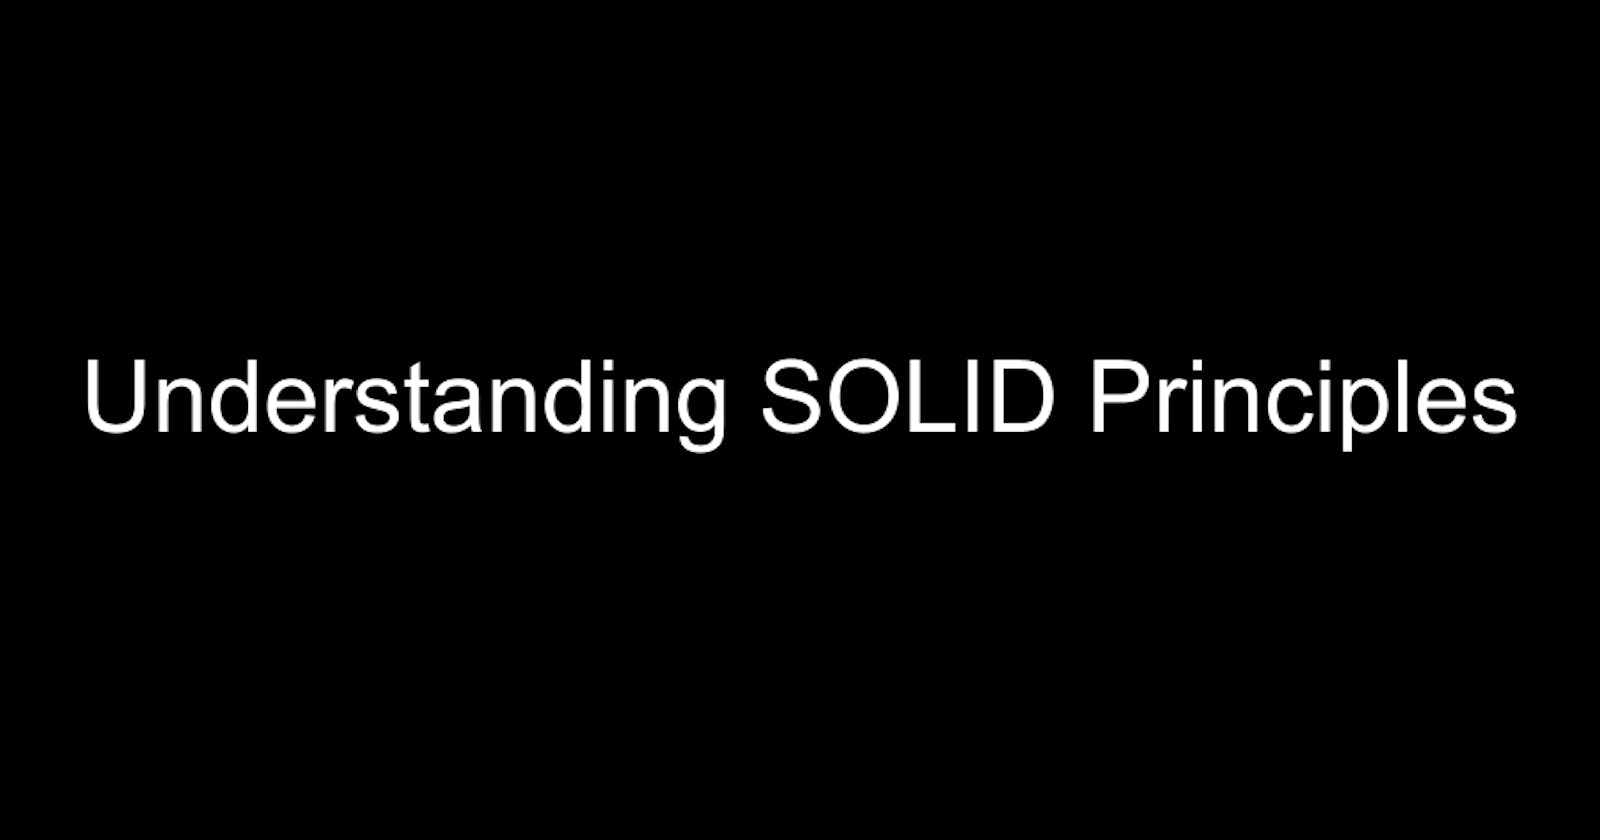 Understanding SOLID Principles